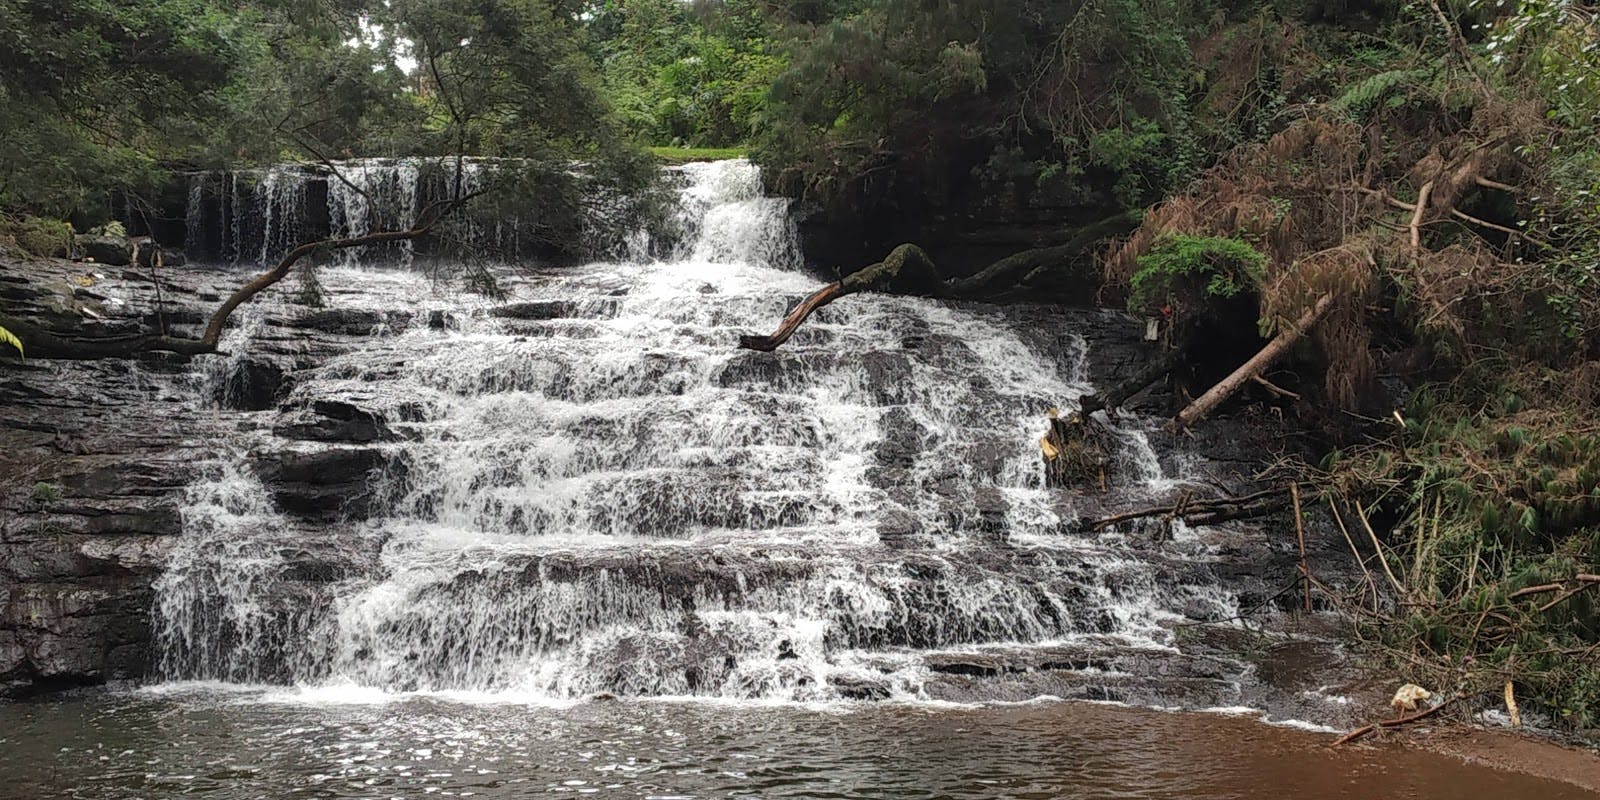 Image - Vattakanal Water Falls